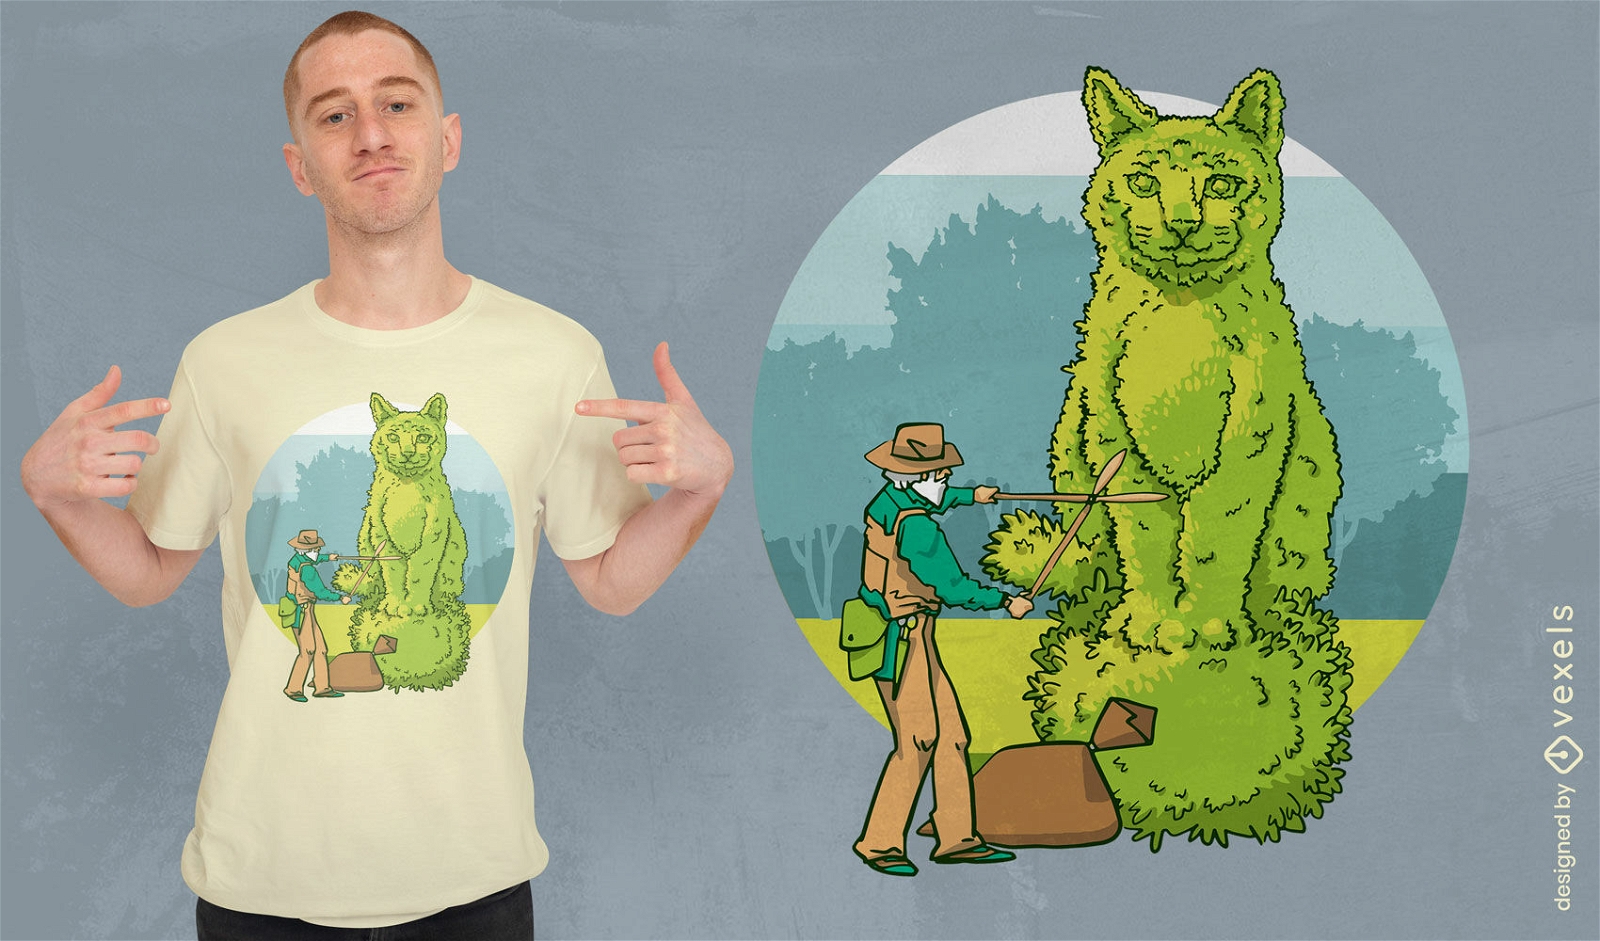 Katzen-Topiary-Gartenarbeit-T-Shirt-Design